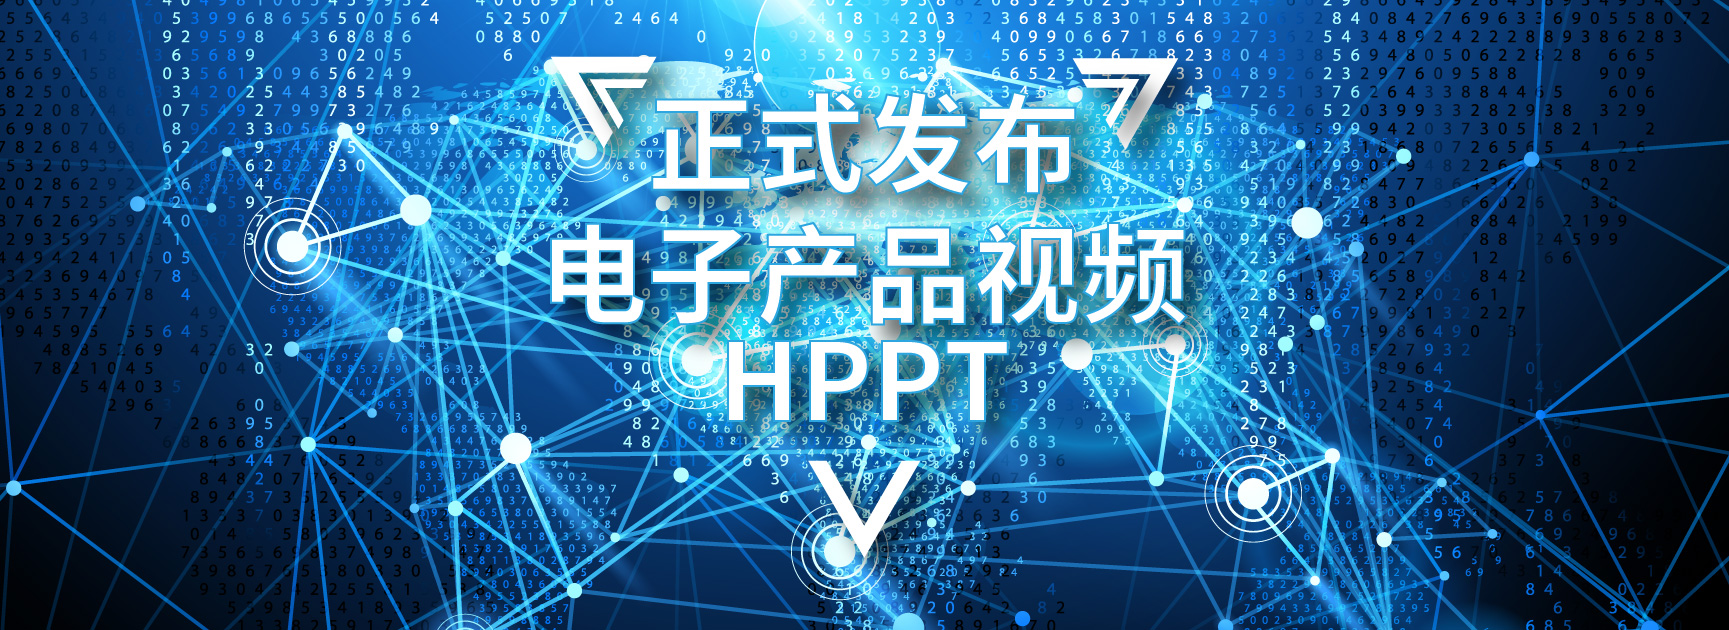 HPRT尊龙凯时电子产品视频先容正式宣布